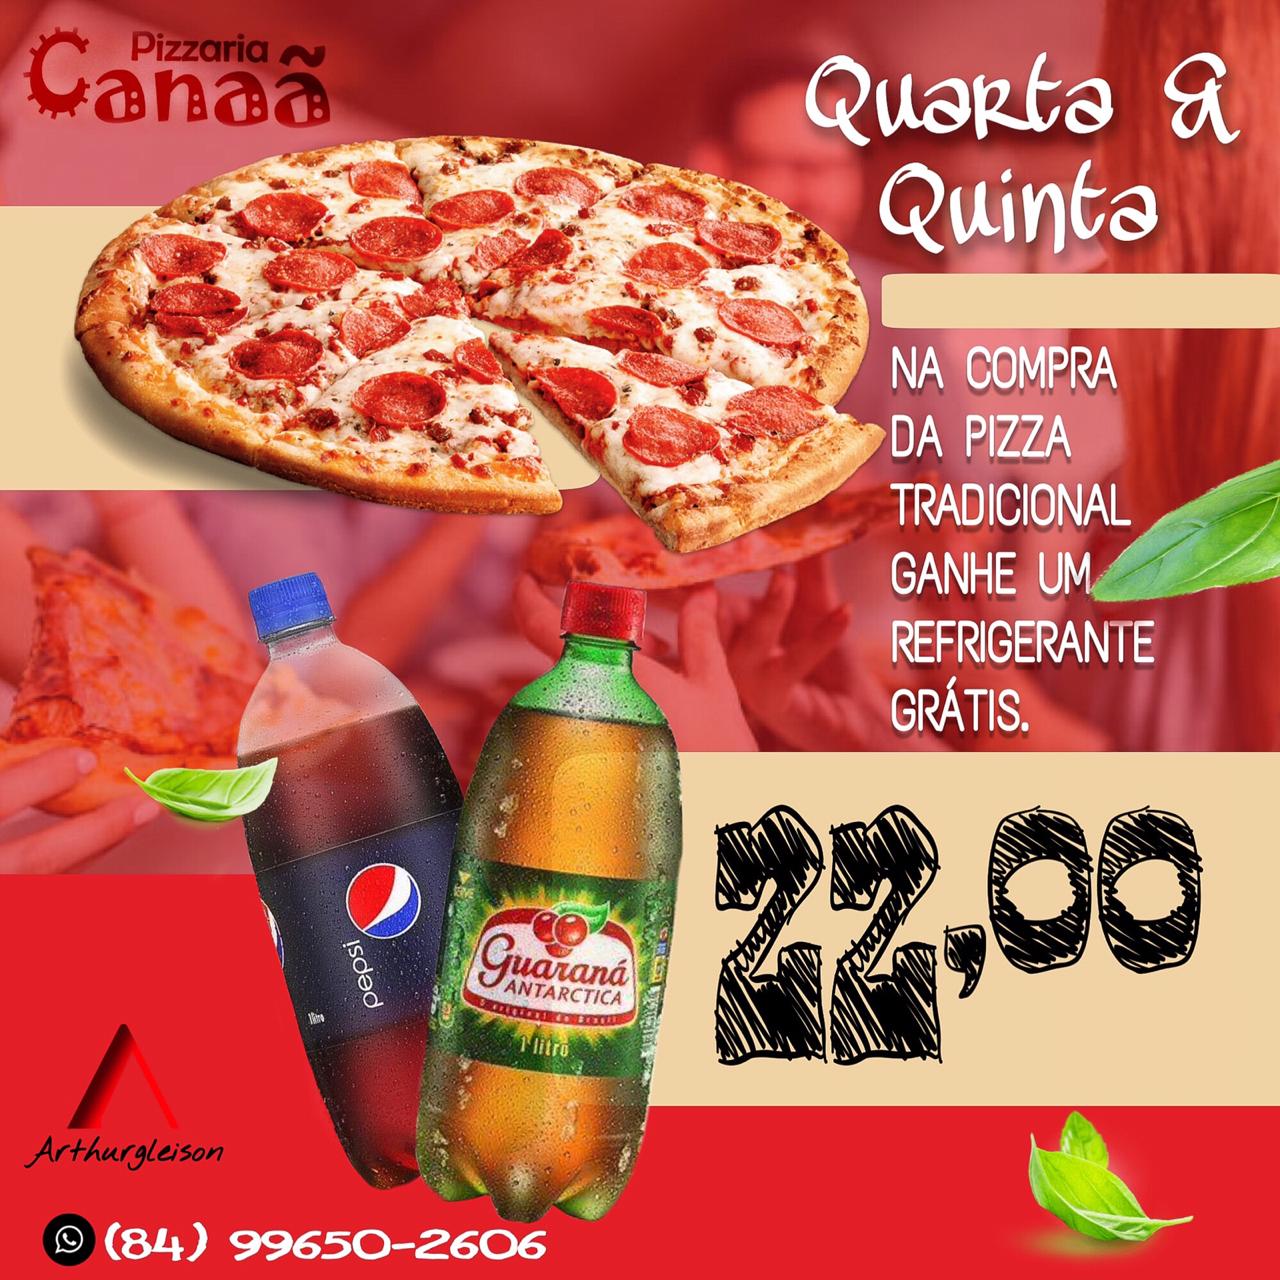 Promoção: Promoção Quarta e Quinta da Pizza + Refri Grátis